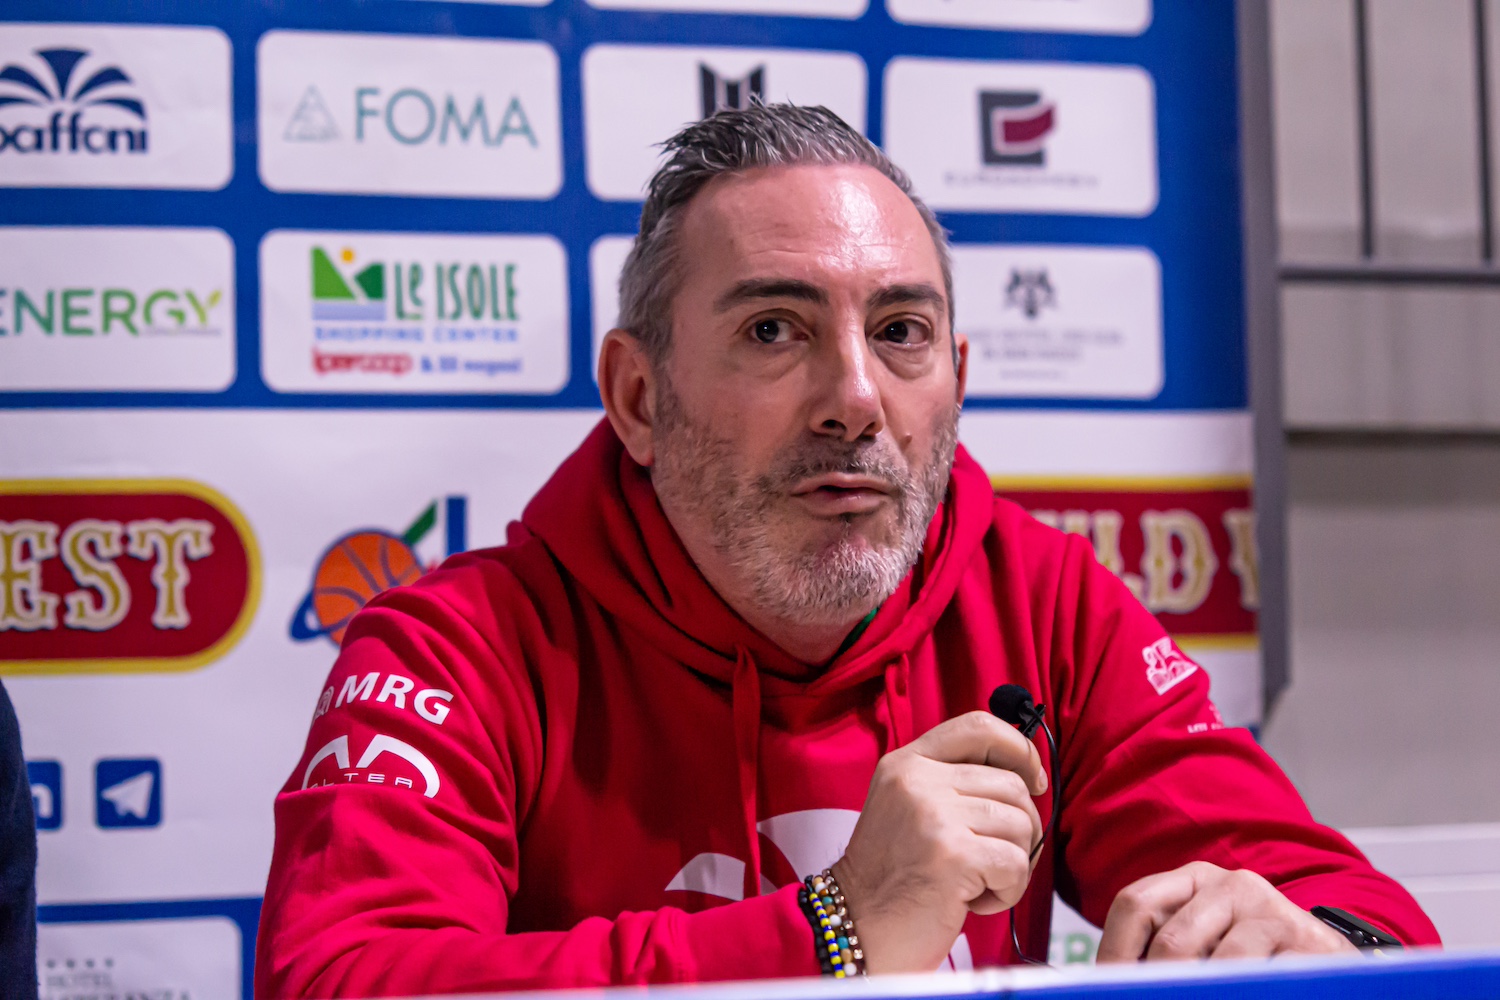 Presentazione coach Riccardo Eliantonio: “Voglio facce cattive e determinate”